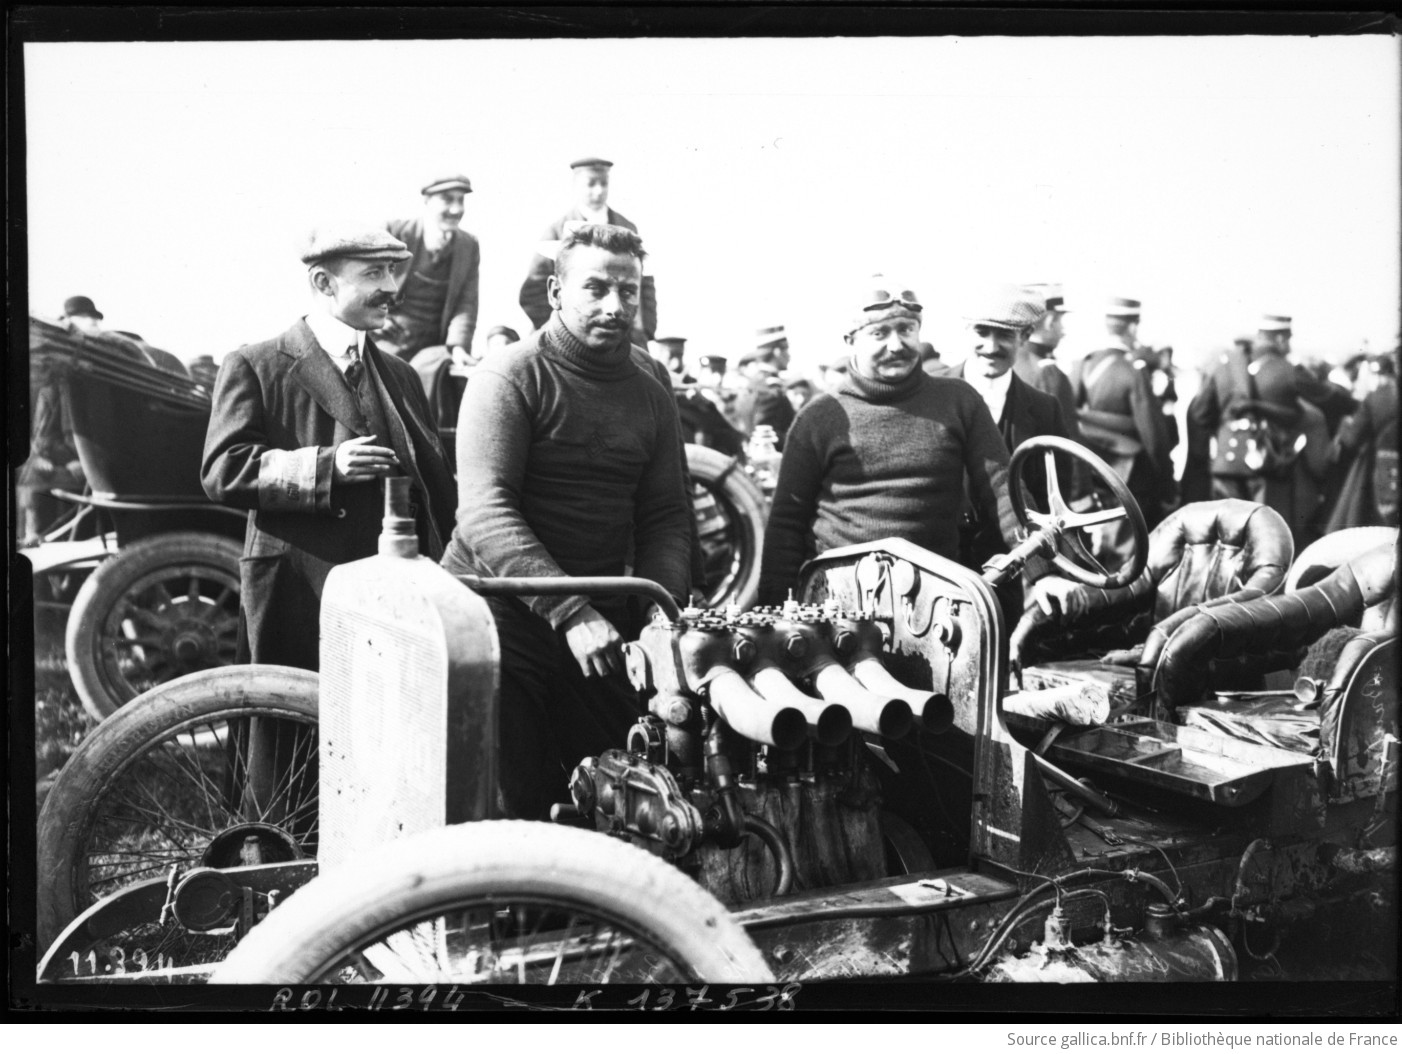 [18 septembre], Boulogne-sur-Mer, coupe des voiturettes 1910, la voiturette de Zuccarelli après son arrivée sur Hispano-Suiza : [photographie de presse] / [Agence Rol] - 1